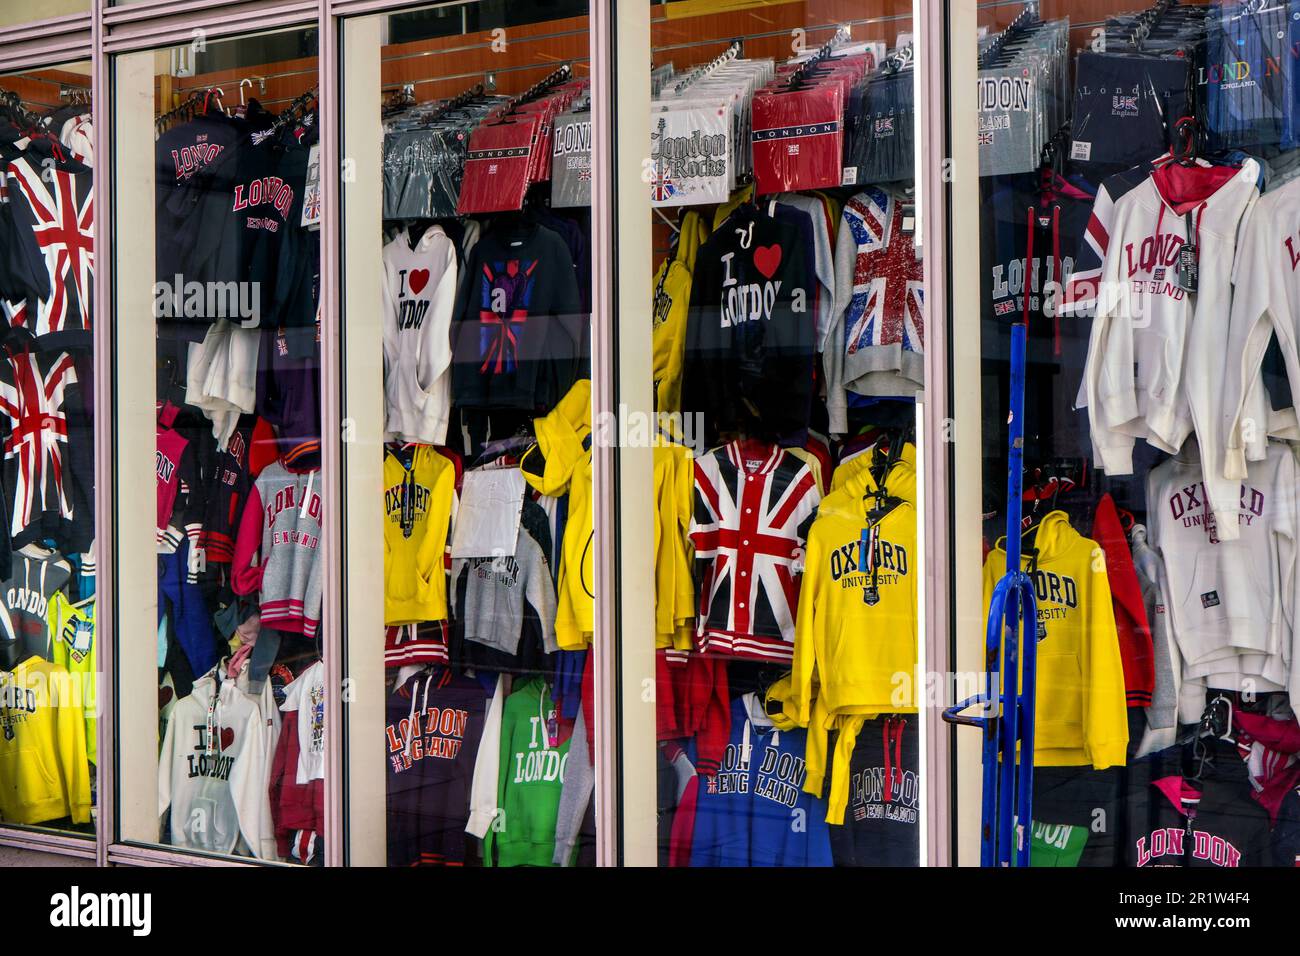 Londres, Royaume-Uni - 02 février 2019: Plusieurs t-shirts et vestes avec des motifs de Londres et britanniques exposés à la boutique de souvenirs, détail de gros plan Banque D'Images